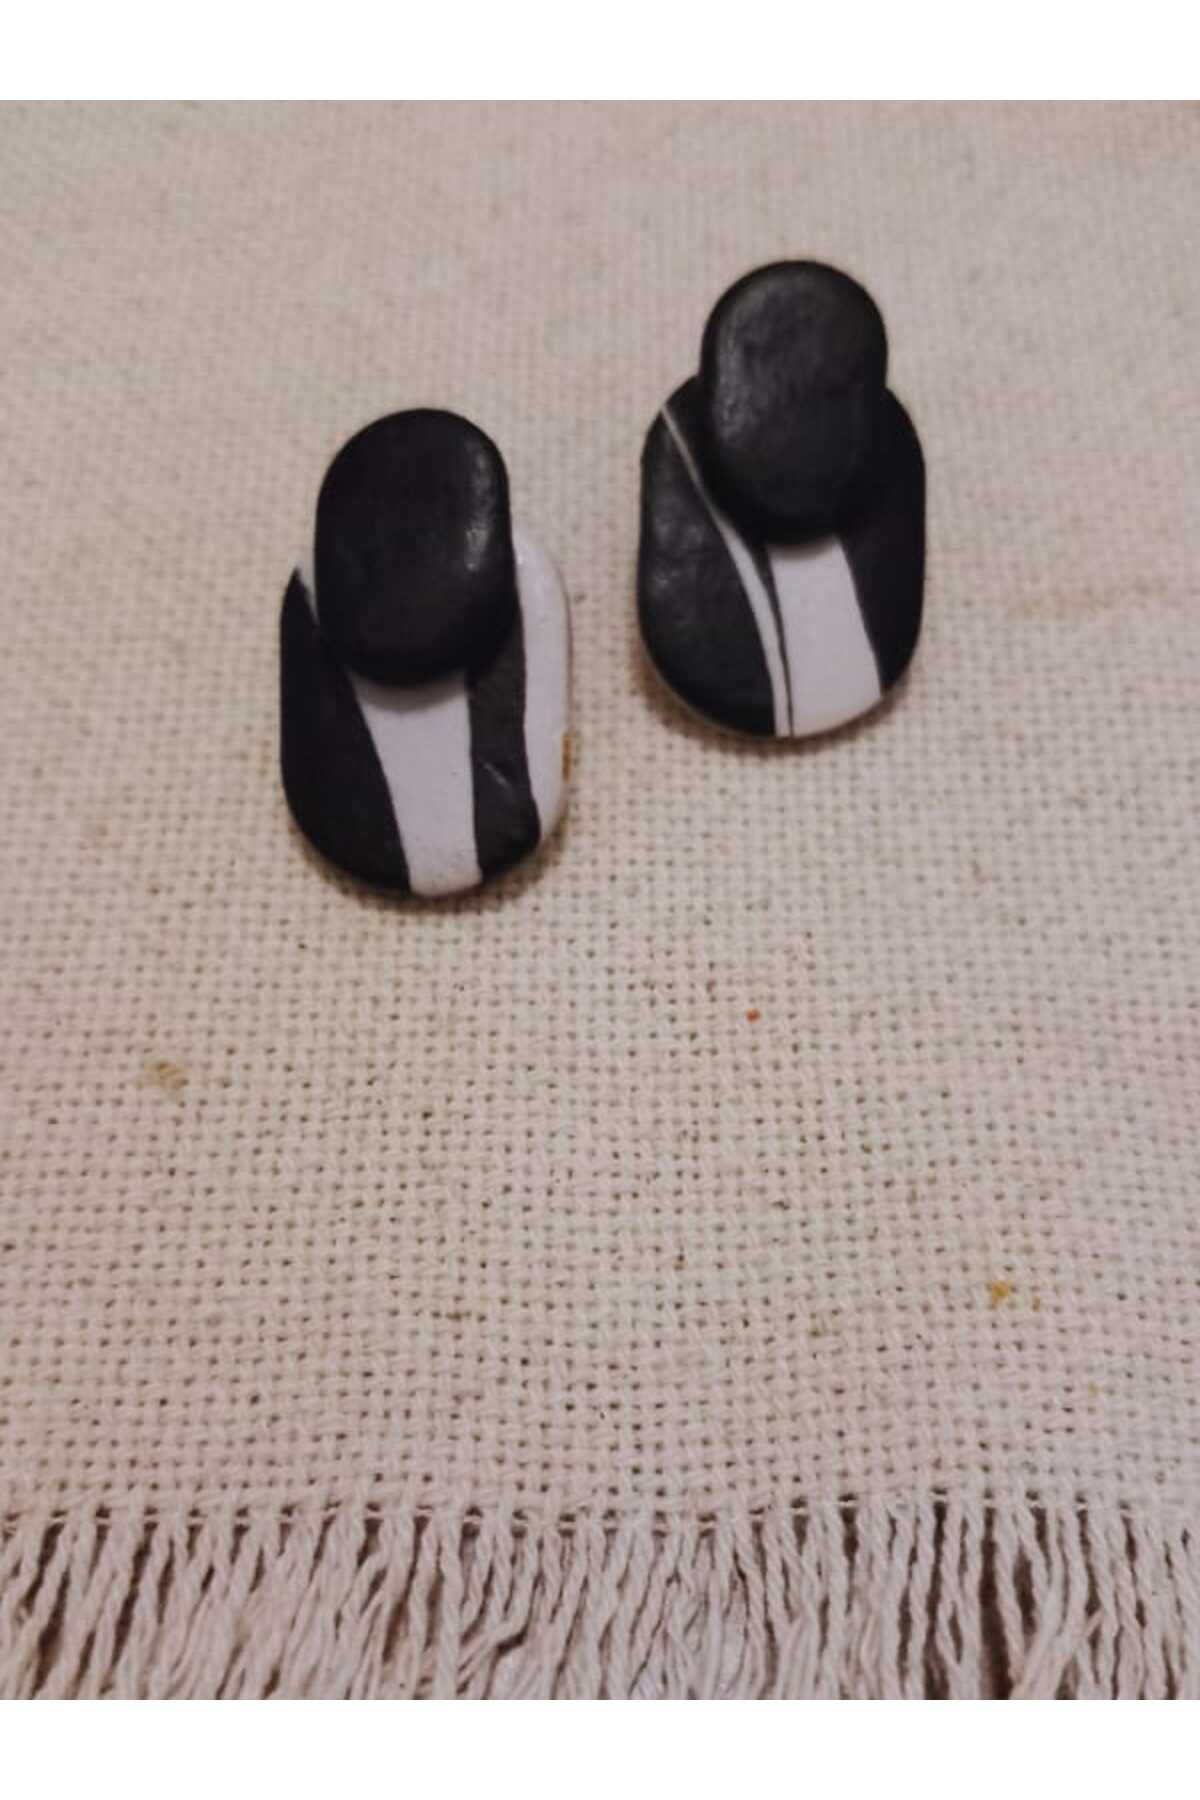 Karşı Köyden Özel Tasarım, El Yapımı Polimer Kil Üzeri Siyah Detay Küpe, Handmade Polymer Clay Earrings